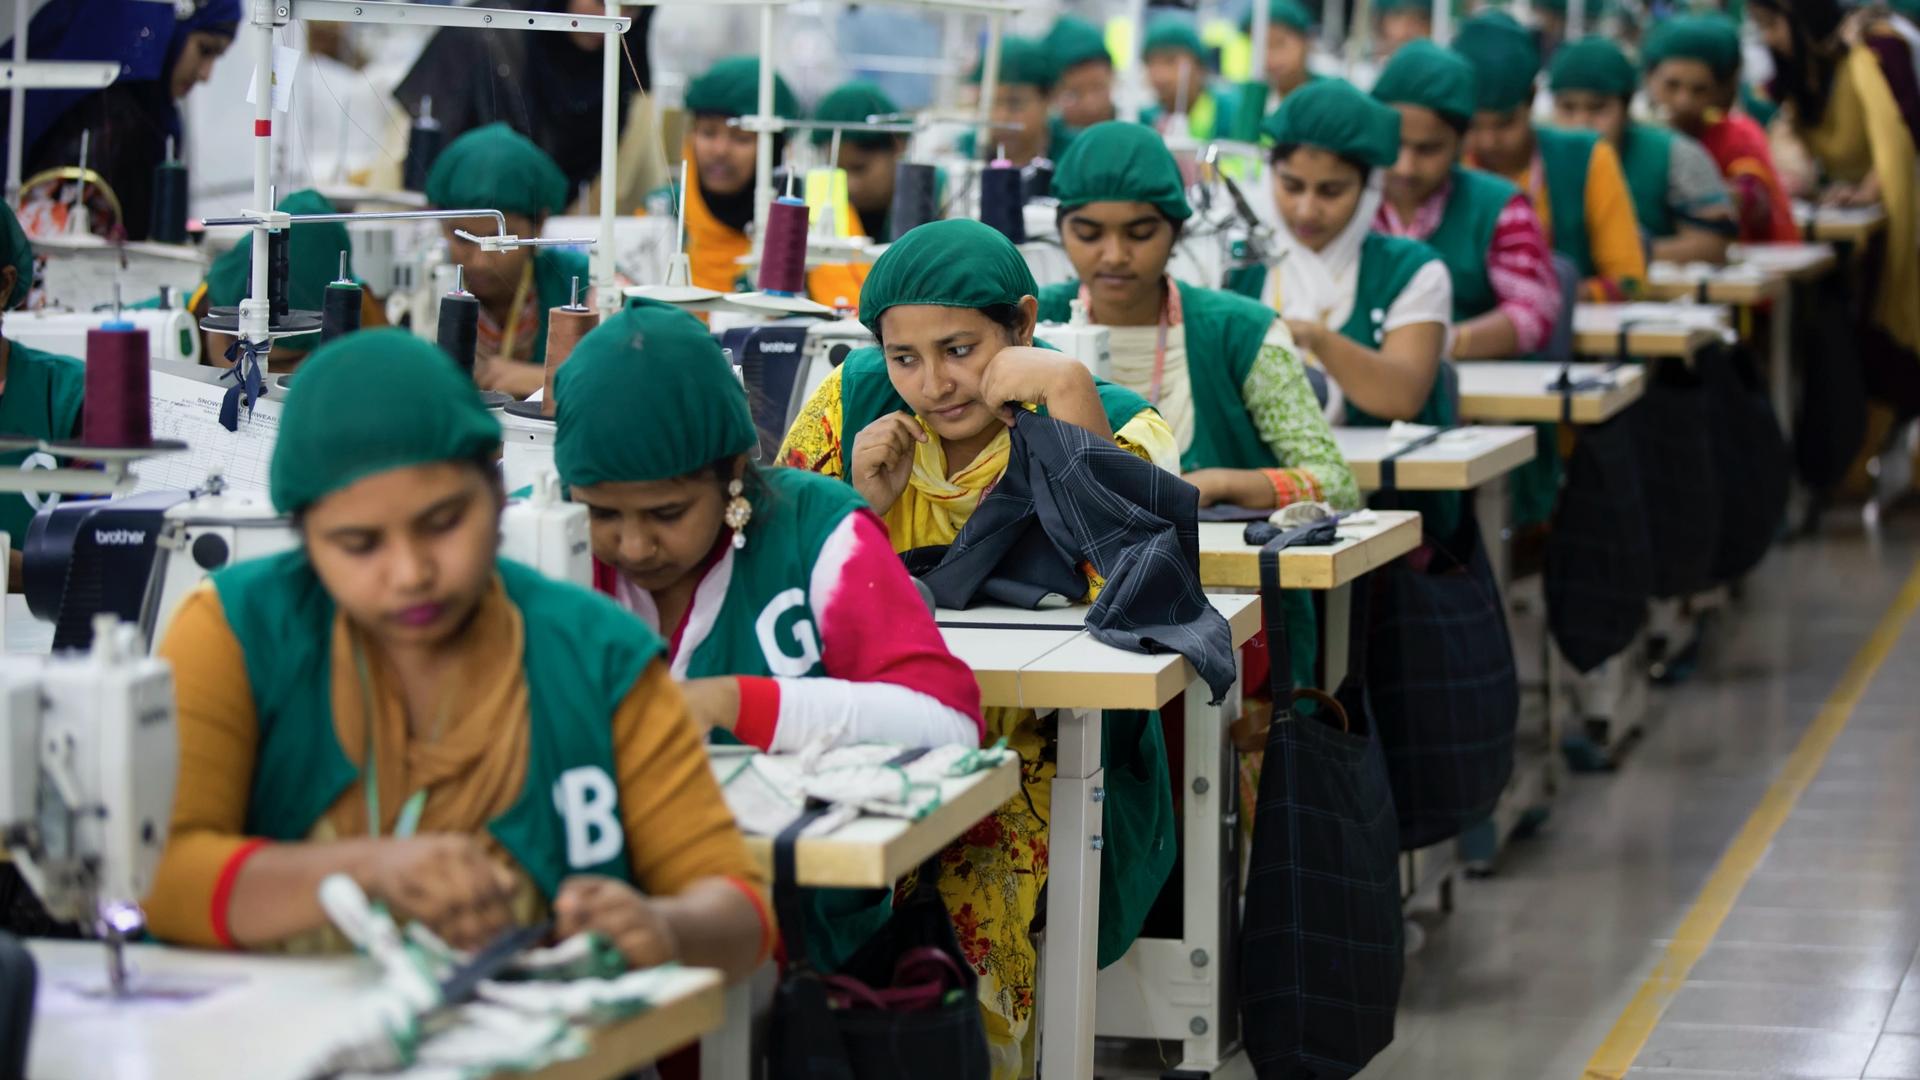 Trainees work at Snowtex garment factory in Dhamrai, near Dhaka, Bangladesh